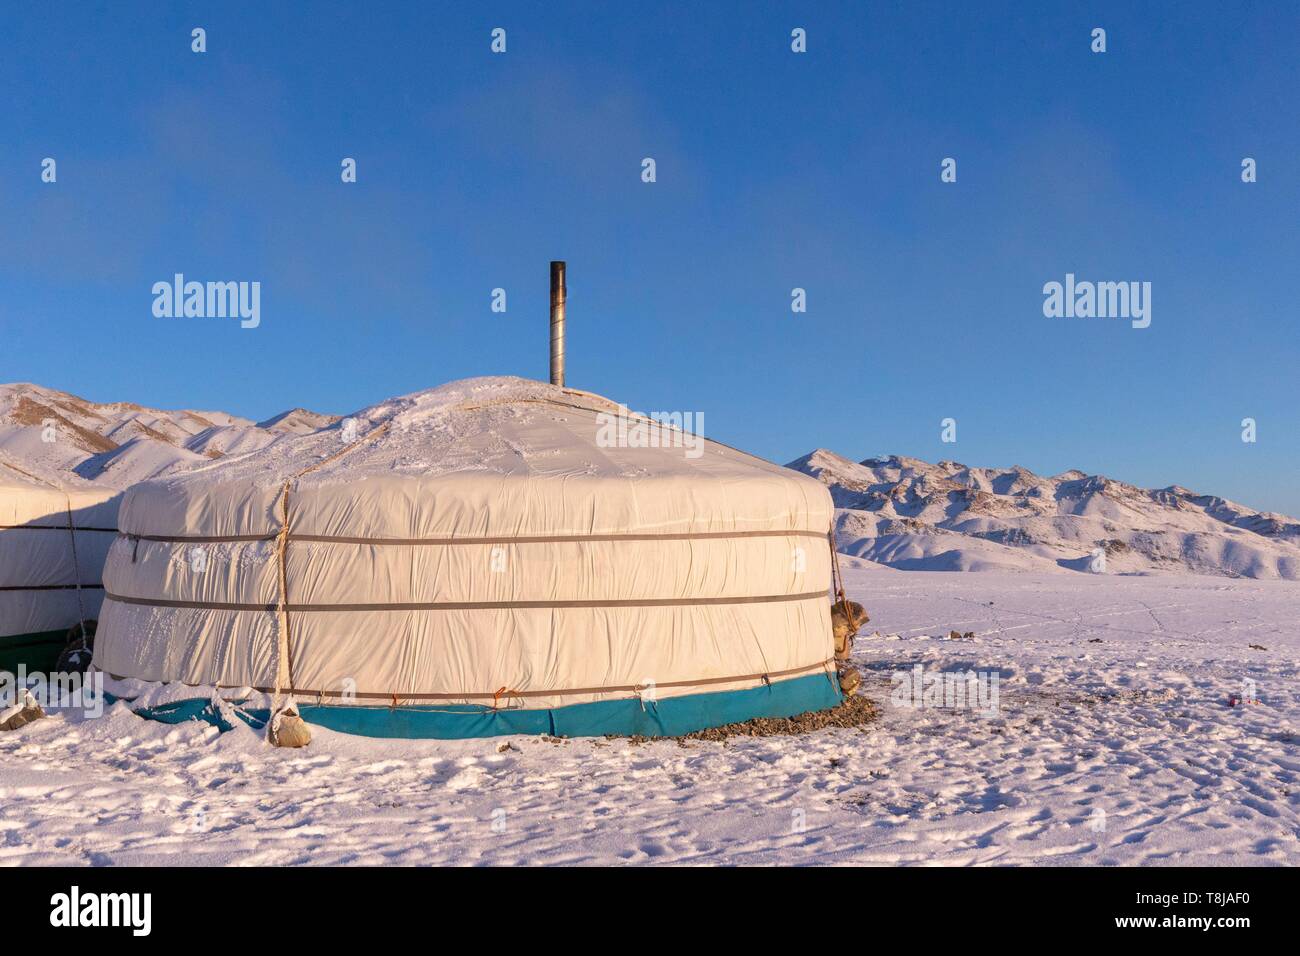 La Mongolie, à l'ouest de la Mongolie, Altaï, Yourte dans la neige Banque D'Images